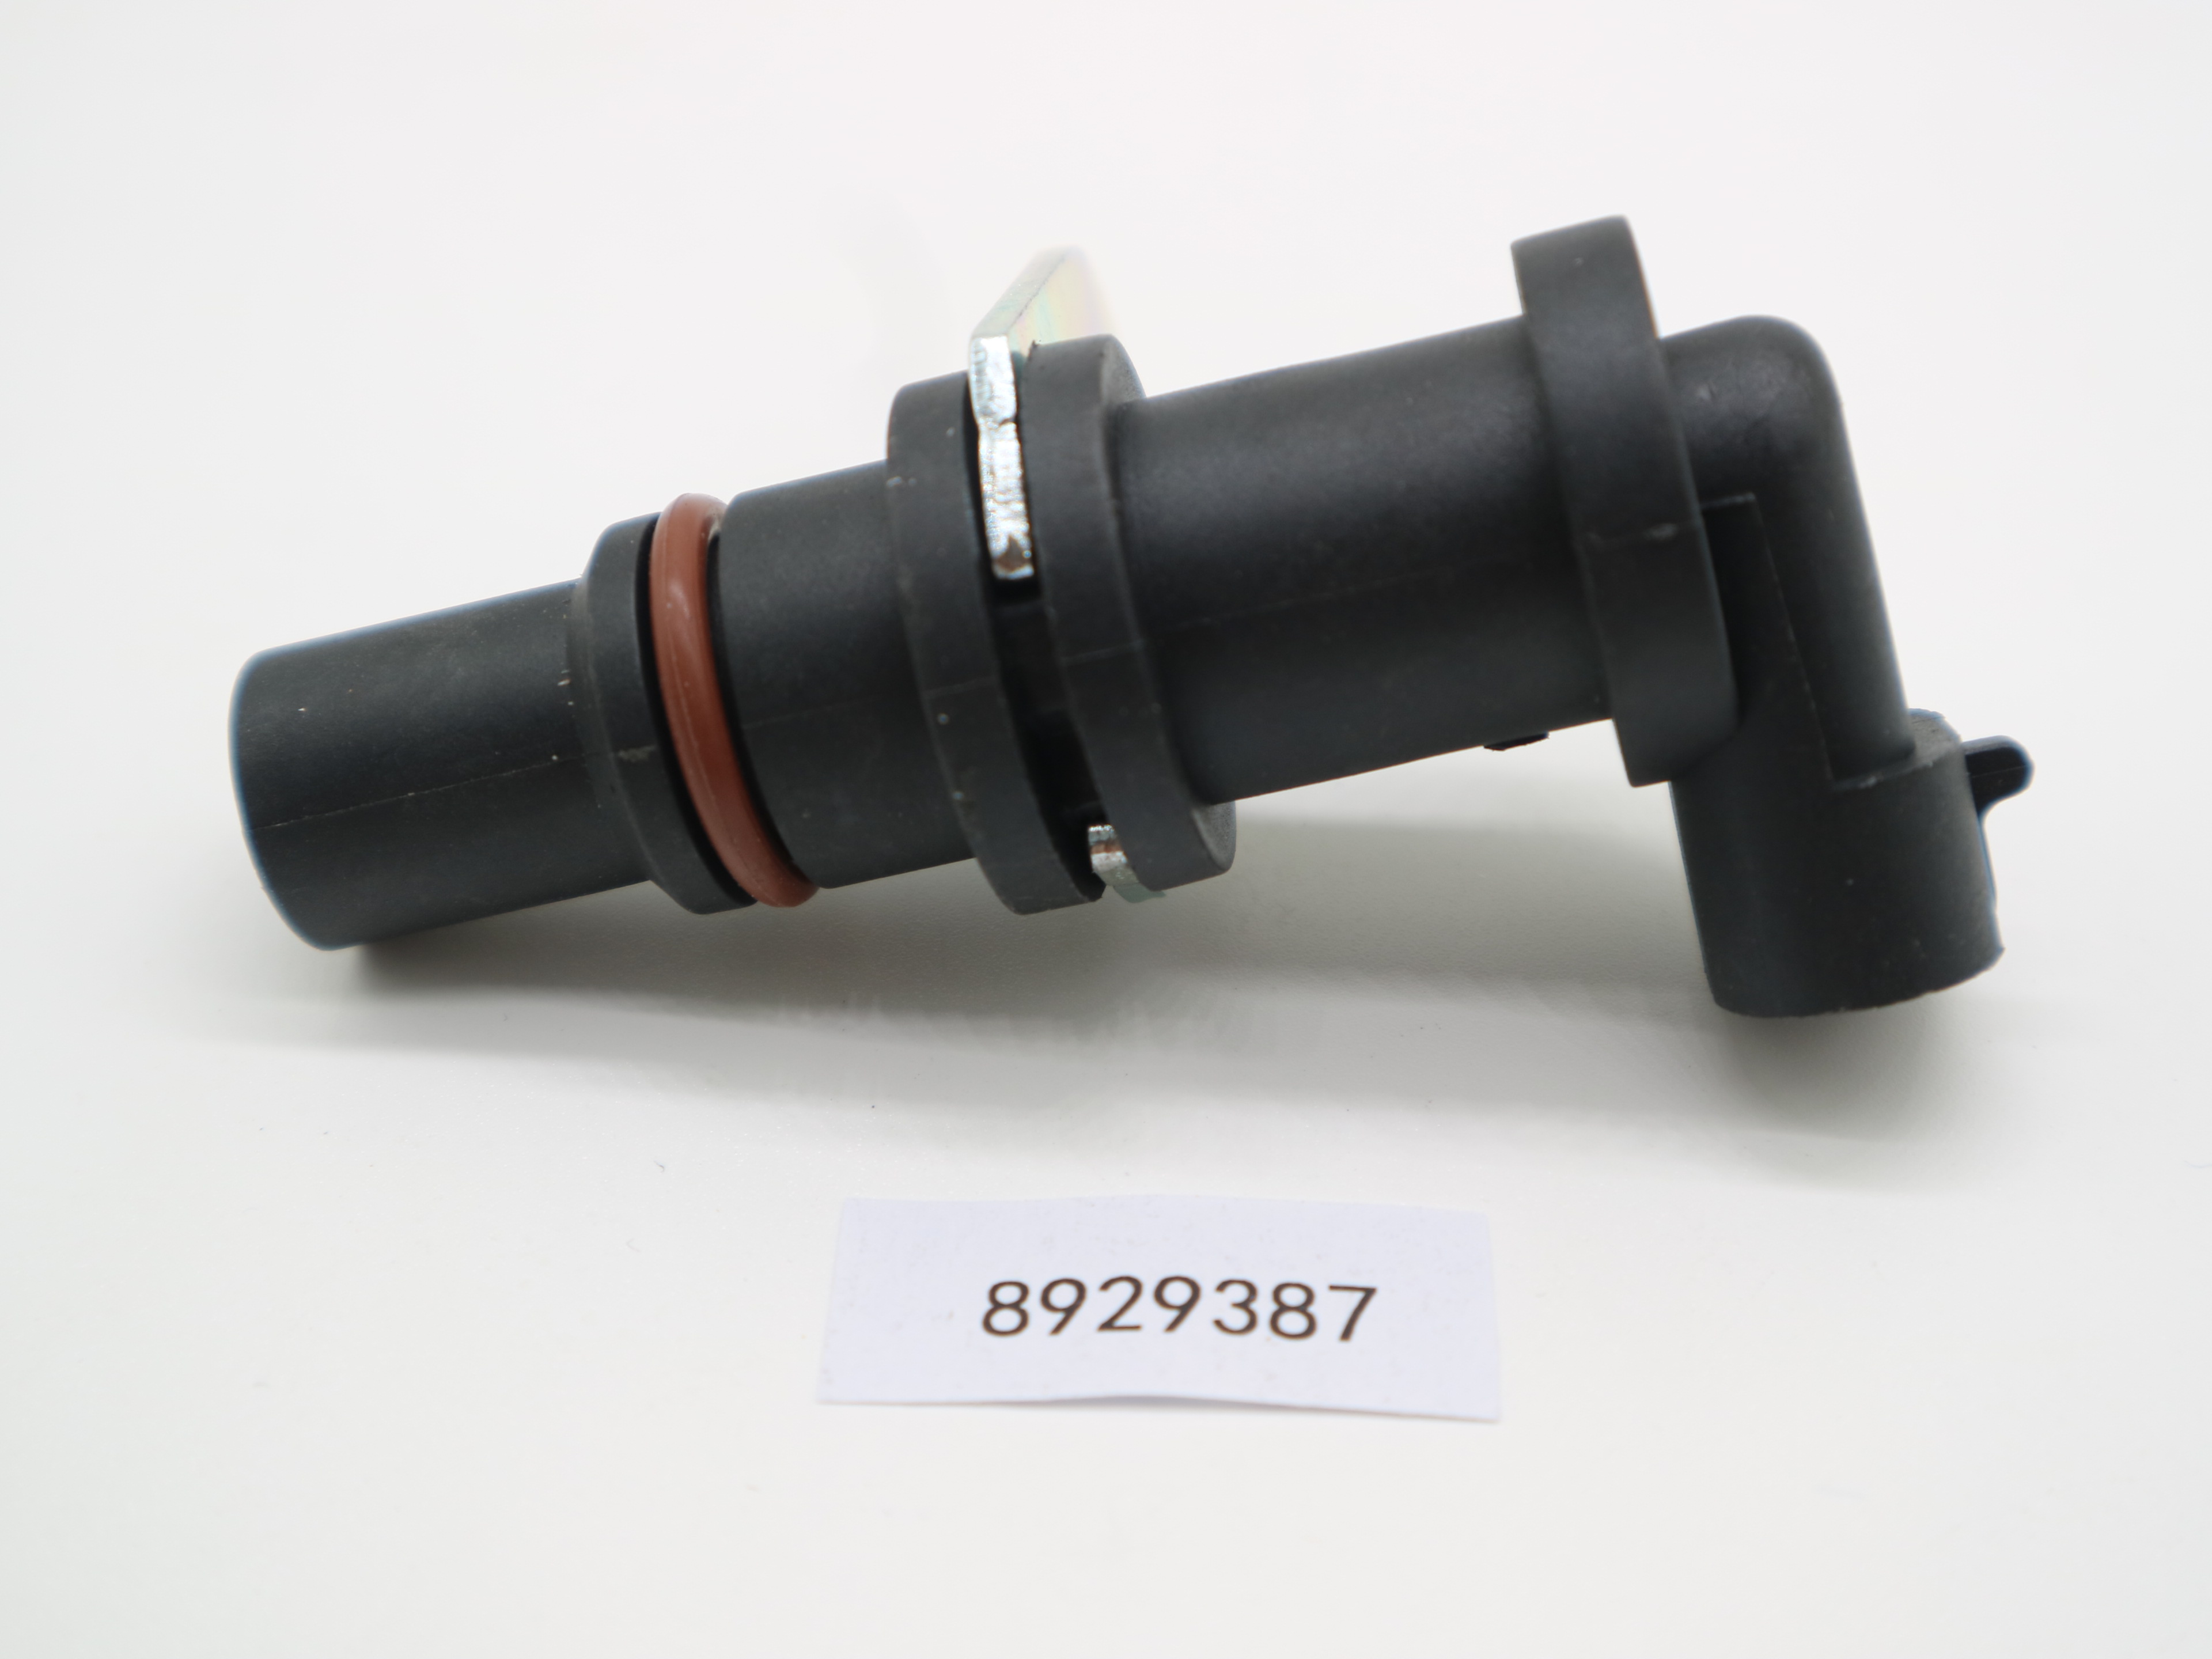 New 8929387 Camshaft Position Sensor For Detroit Diesel Series P/N 60 DDE S60